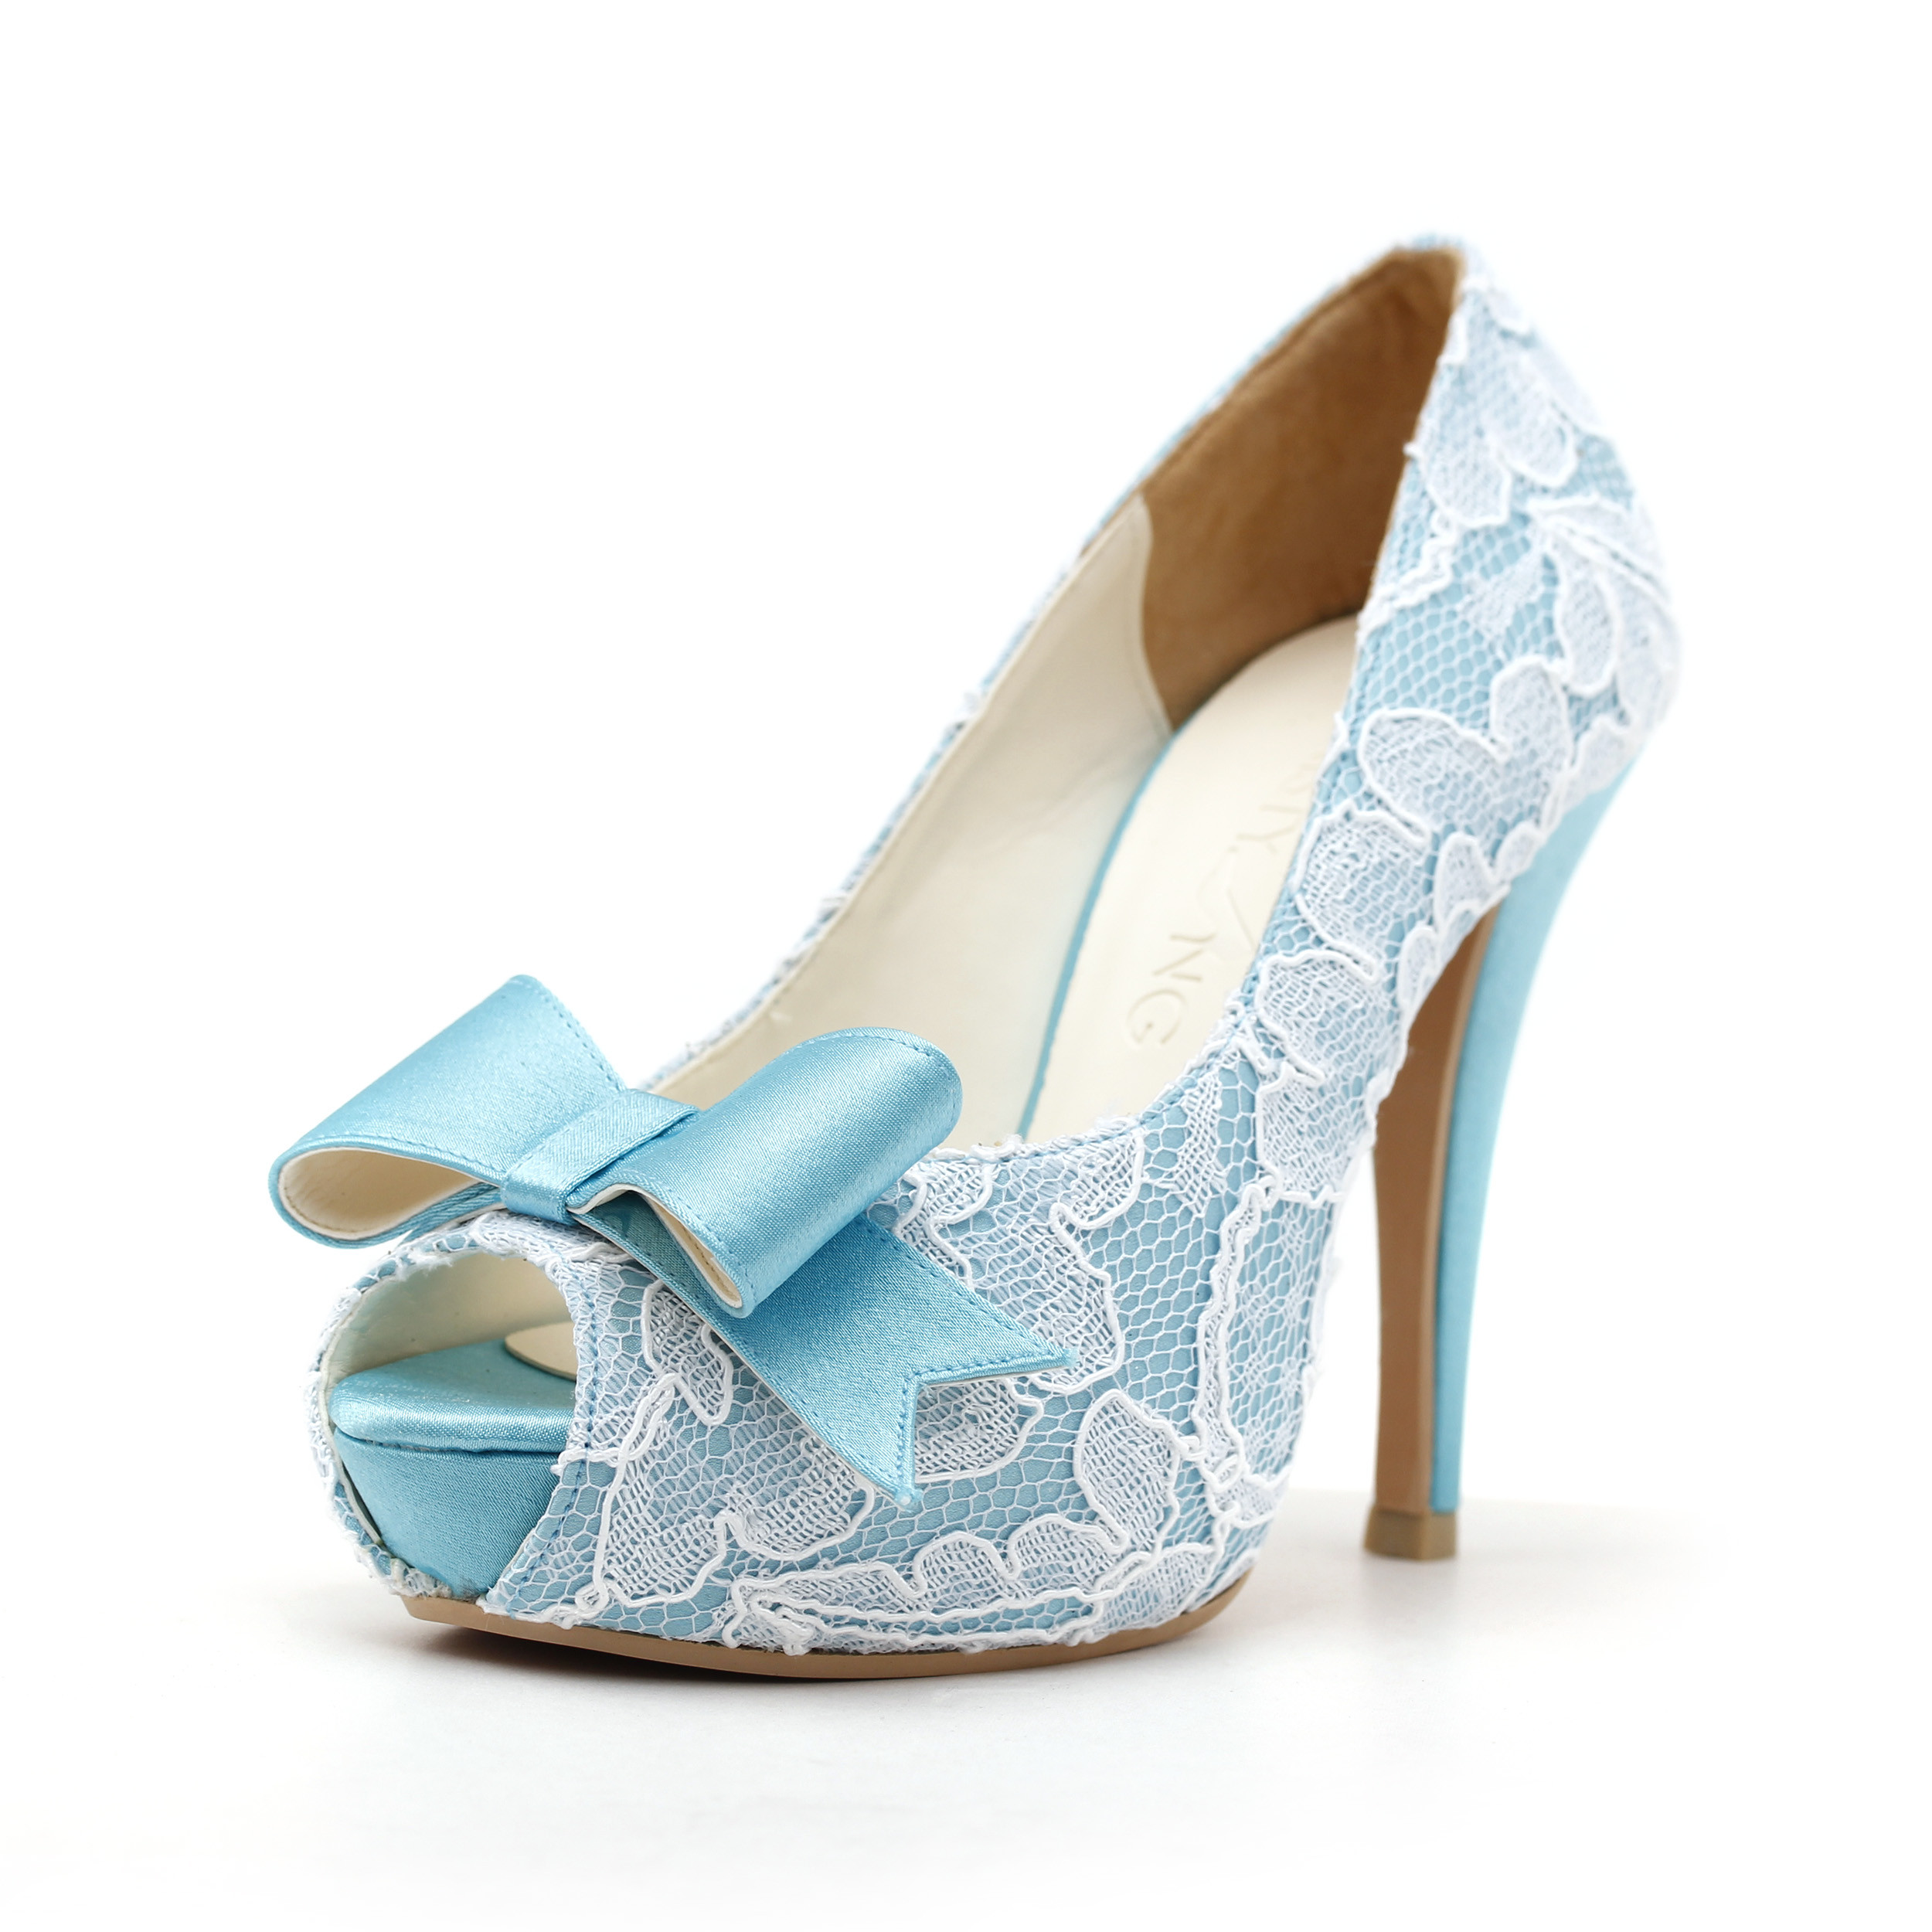 Blue Lace Wedding Shoes
 lace embellished blue bridal shoes